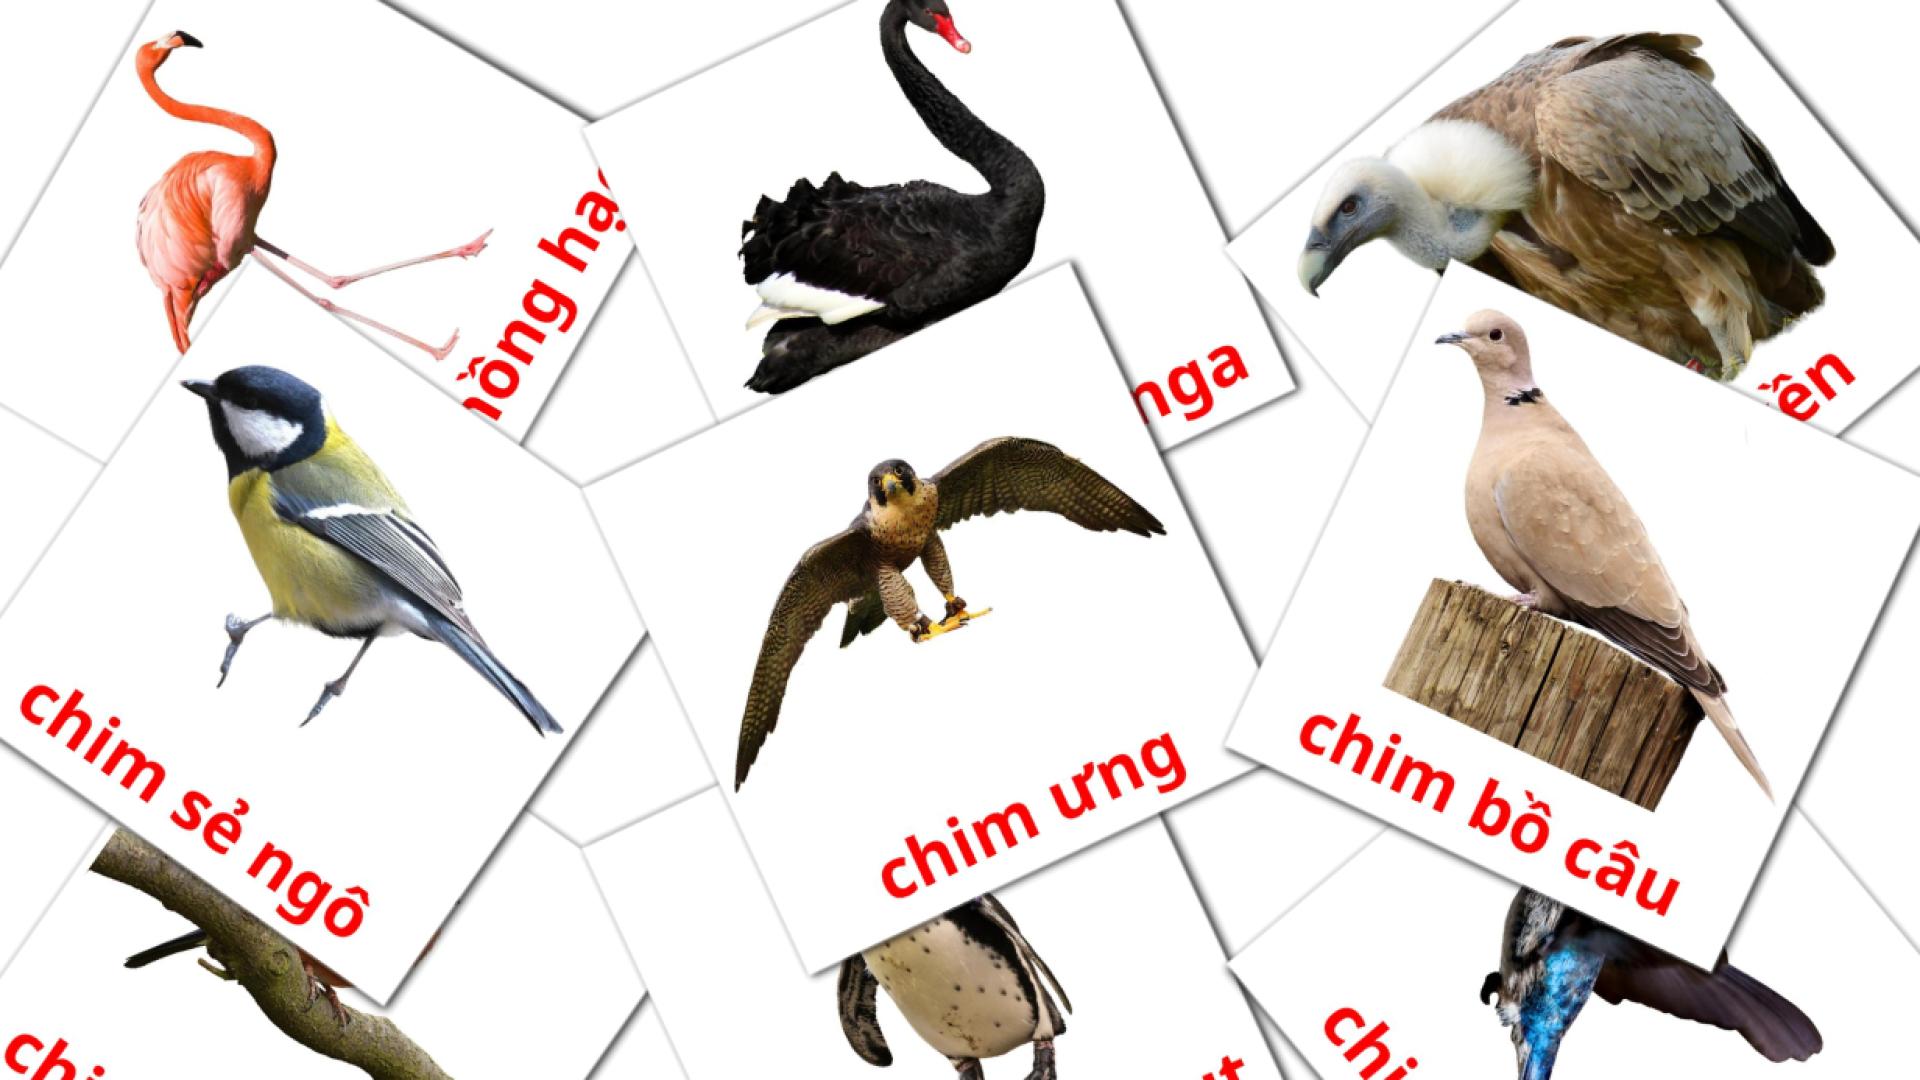 18 Chim hoang flashcards